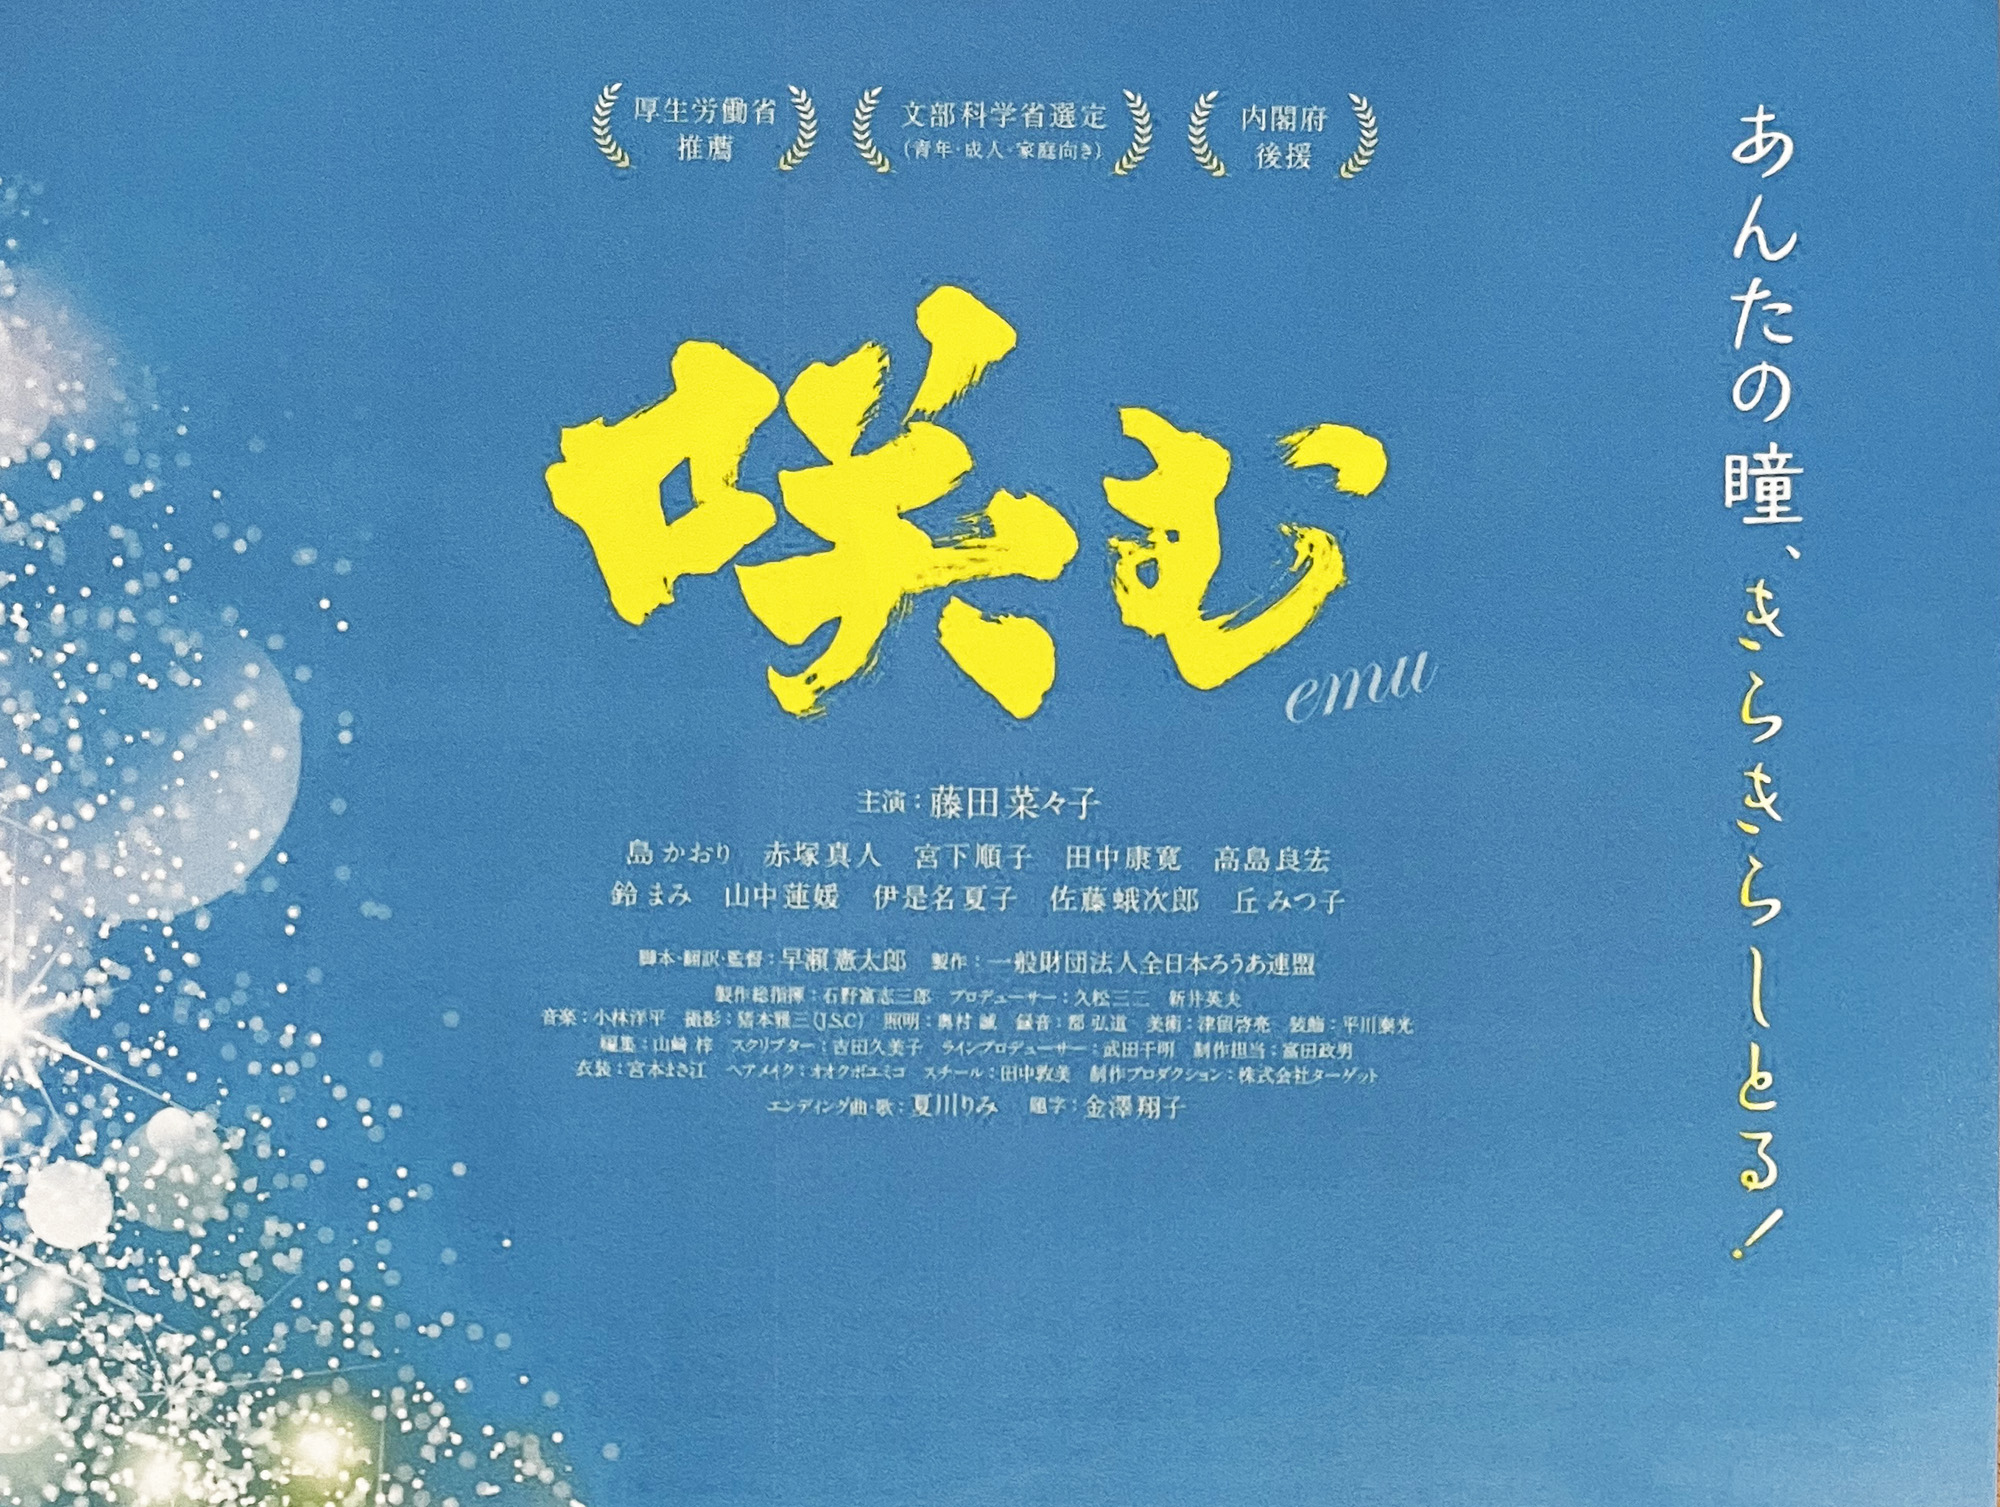 2022年2月23日 全日本ろうあ連盟創立70周年記念映画「咲む emu」 上映！